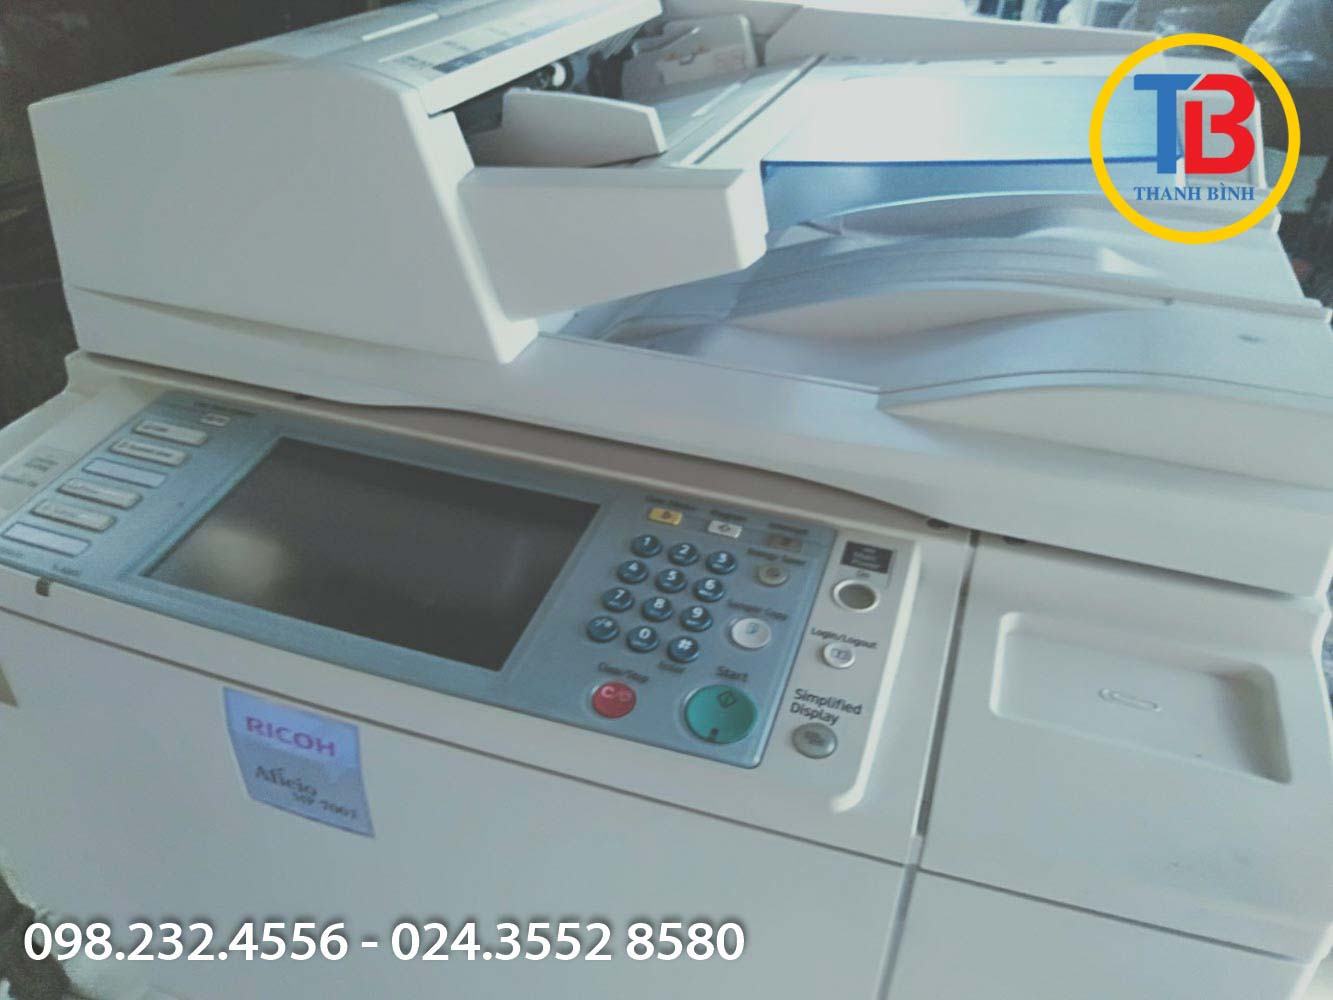 Cho thuê máy photocopy giá rẻ tại Thạch Thất chỉ có tại Thanh Bình